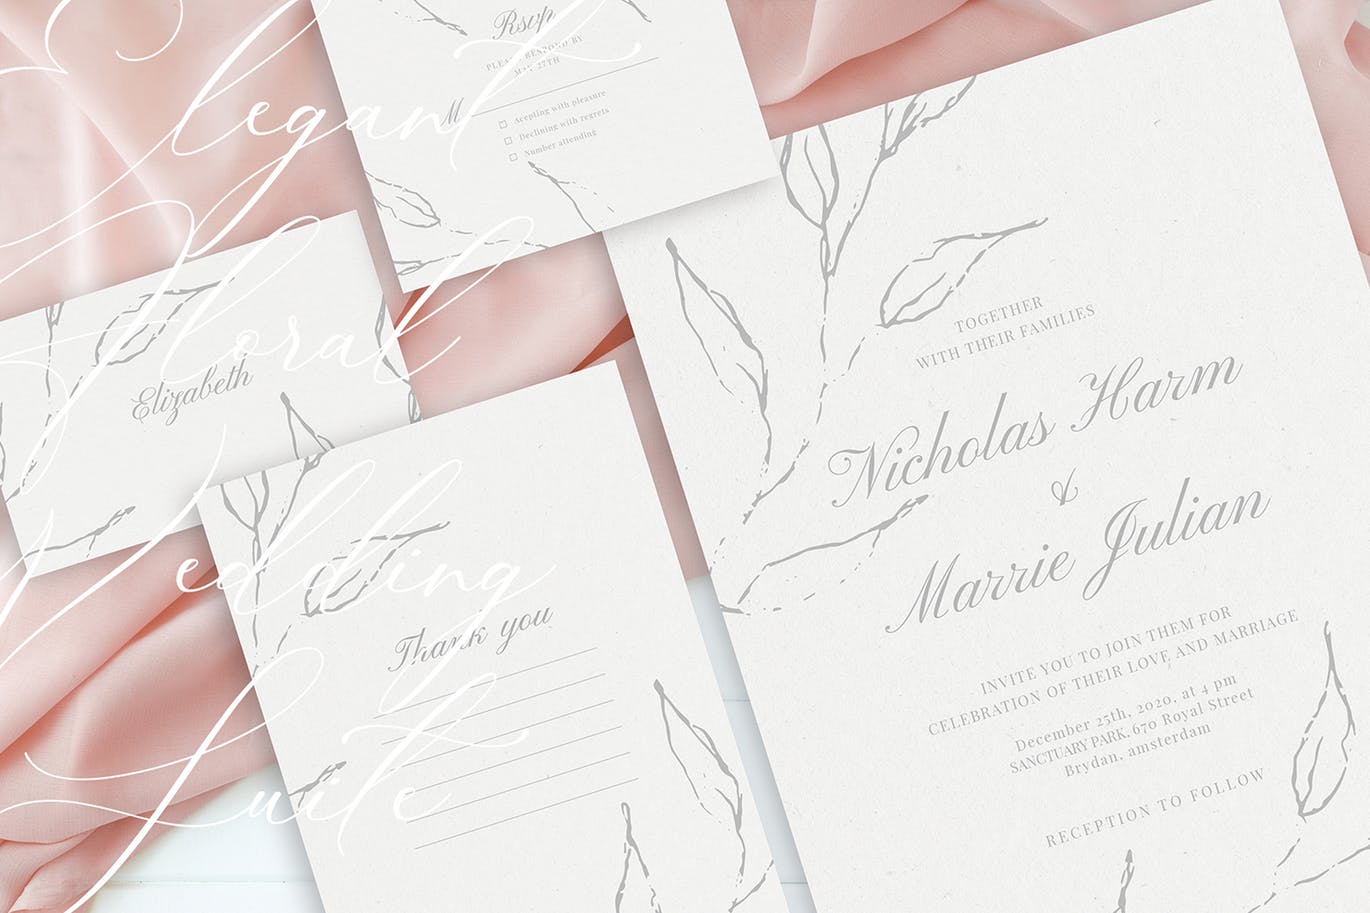 优雅手绘花卉图案婚礼主题设计素材包 Elegant Floral Wedding Suite插图(1)